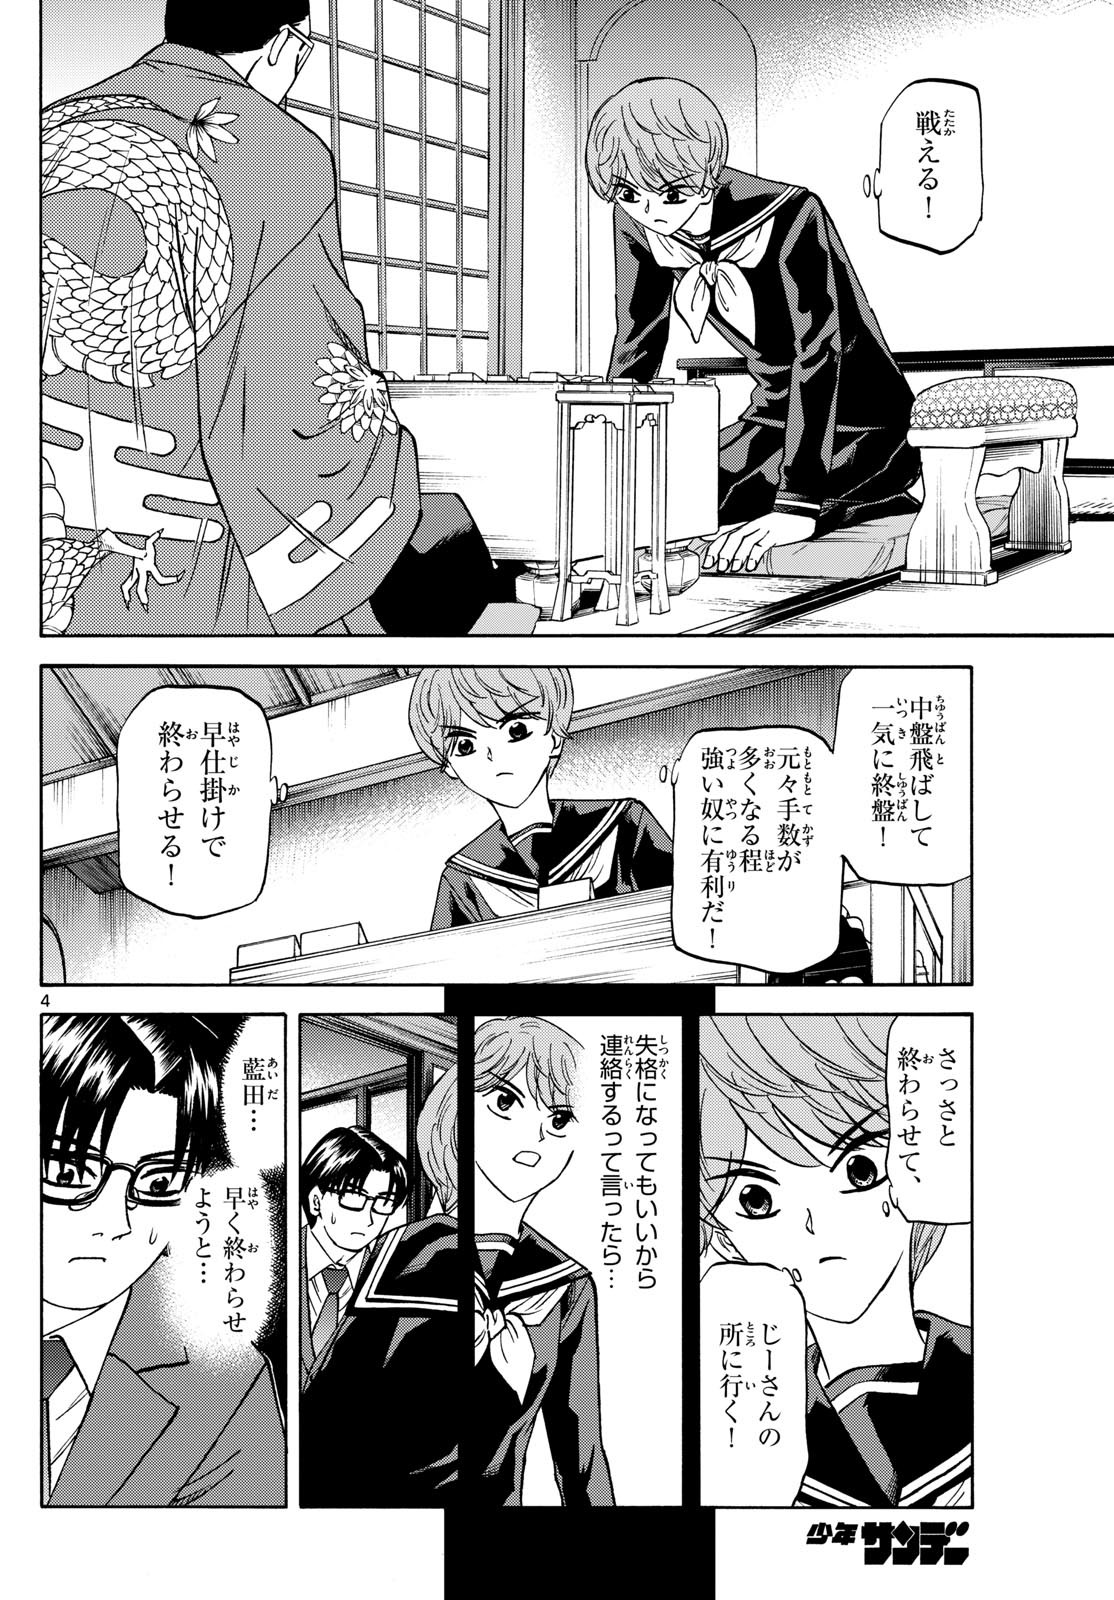 Ryu-to-Ichigo - Chapter 177 - Page 4